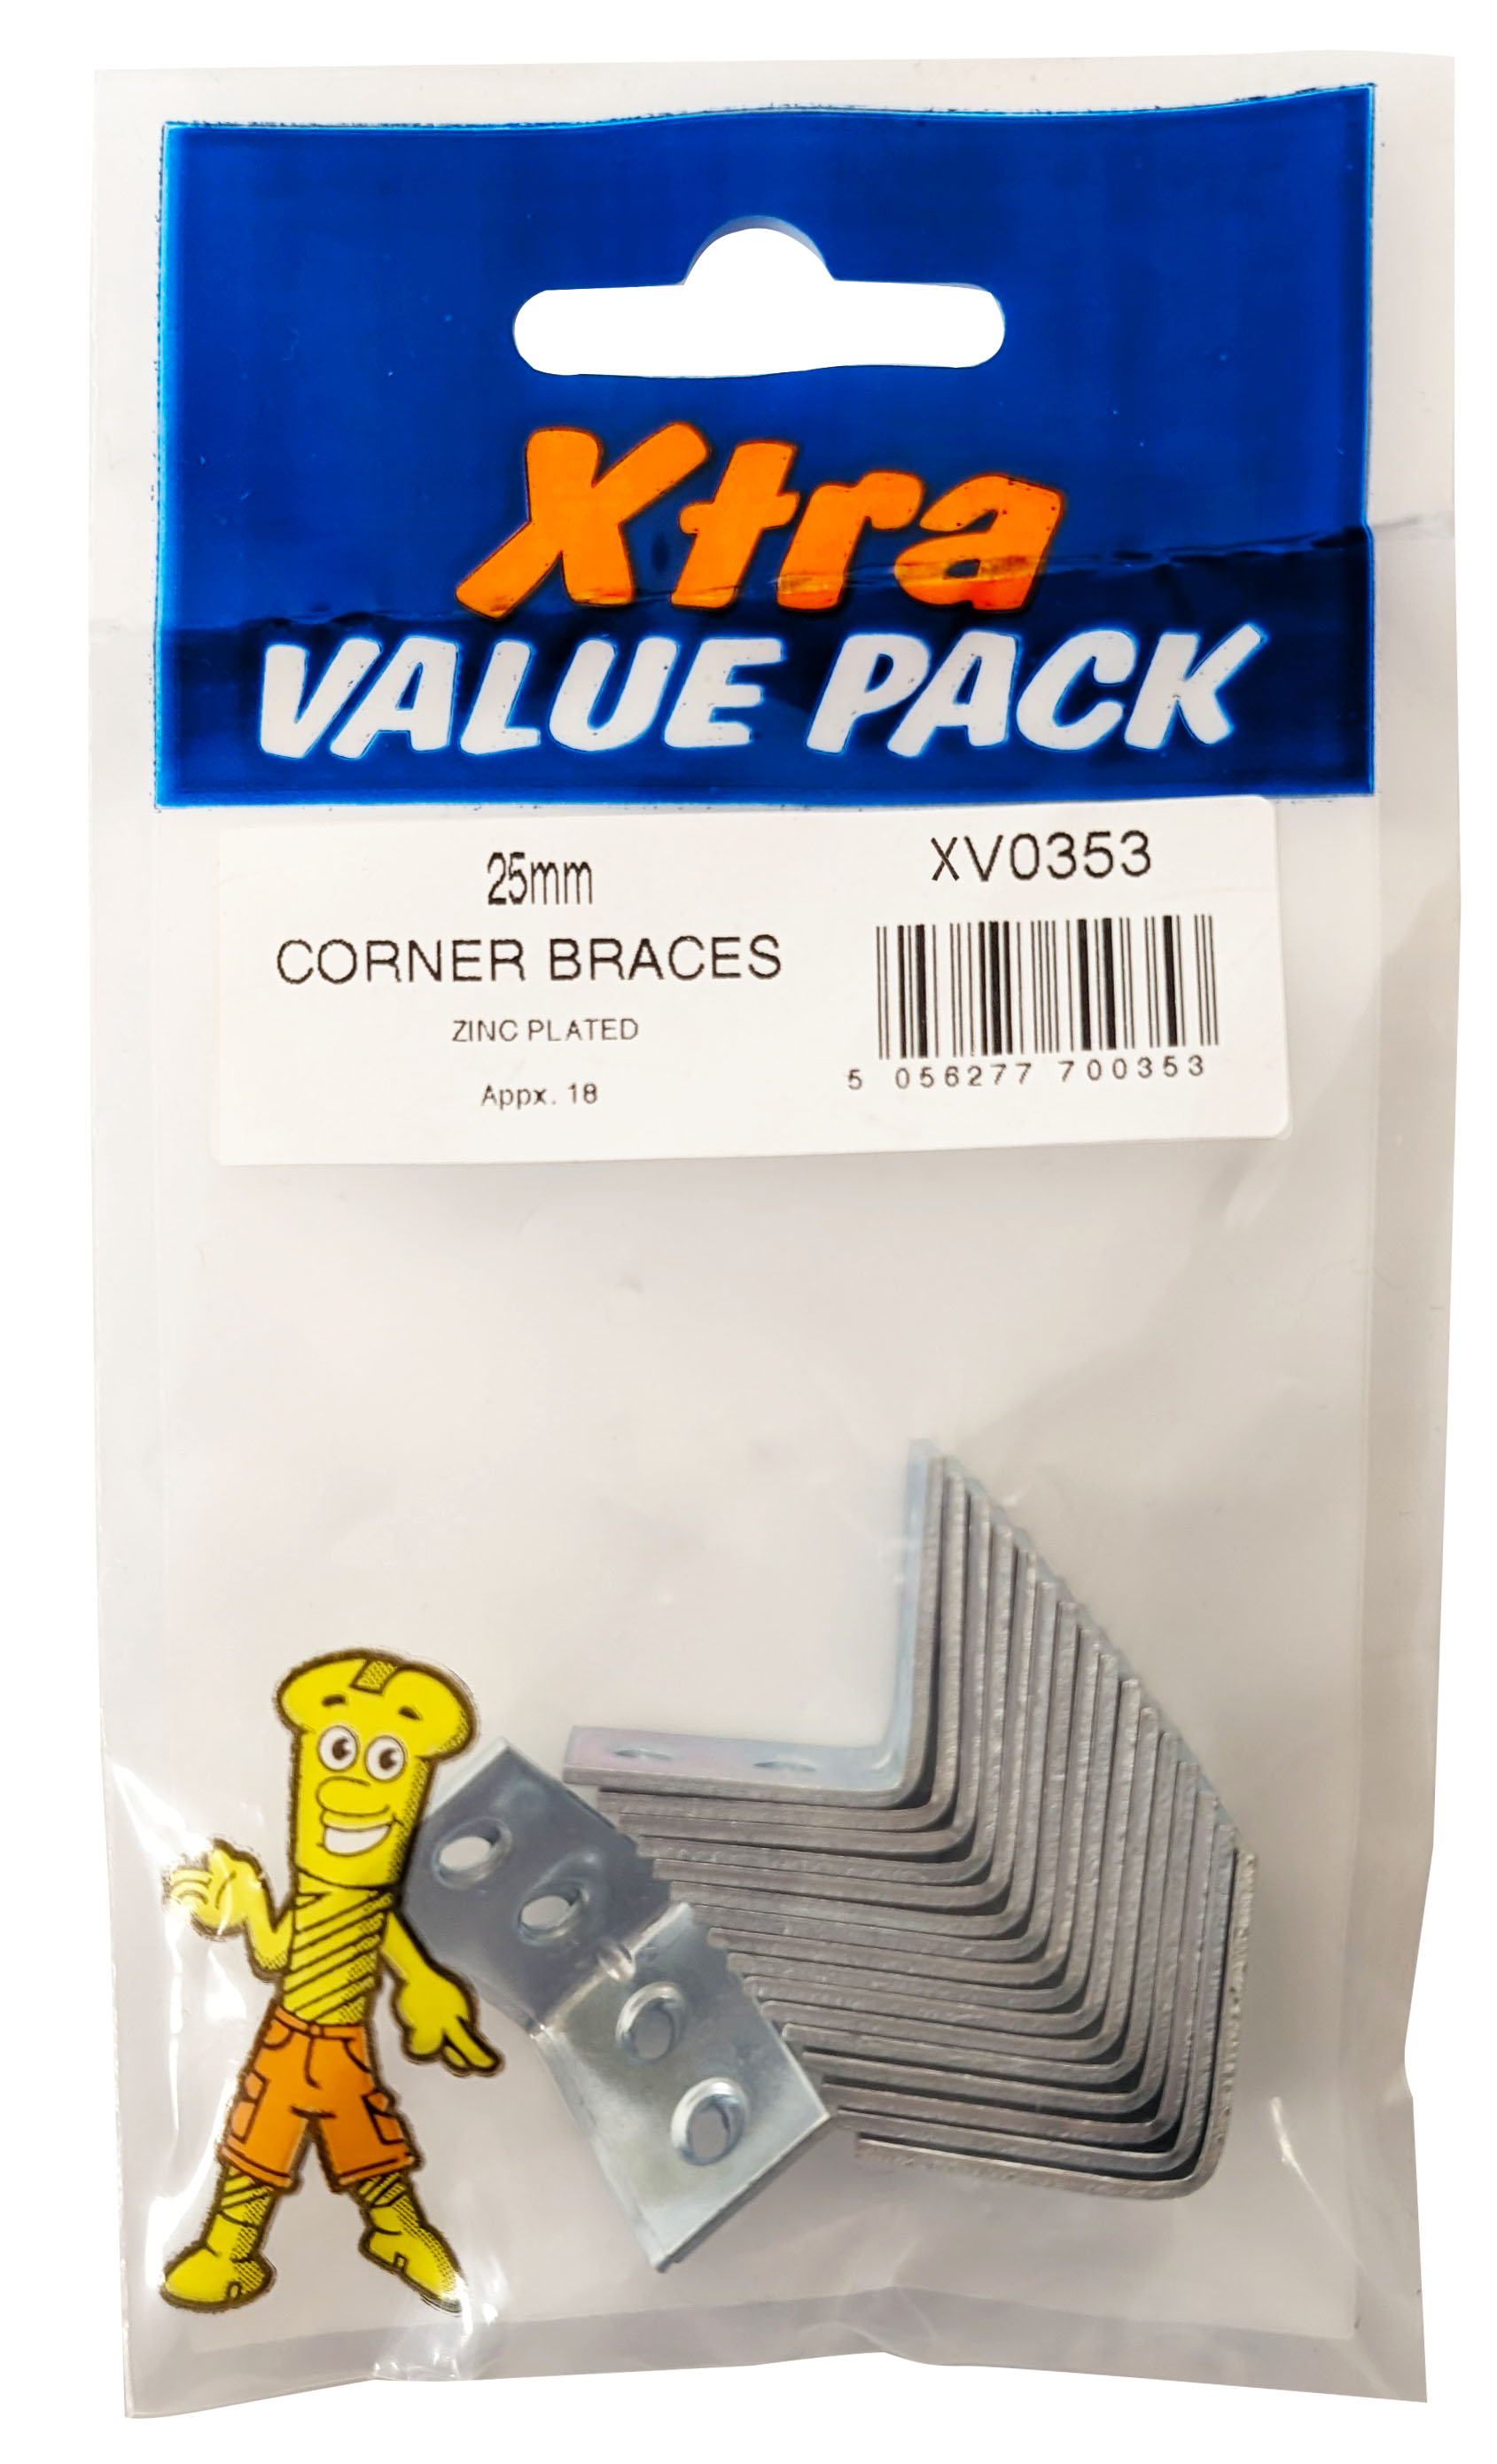 Xtra Value Multi Price